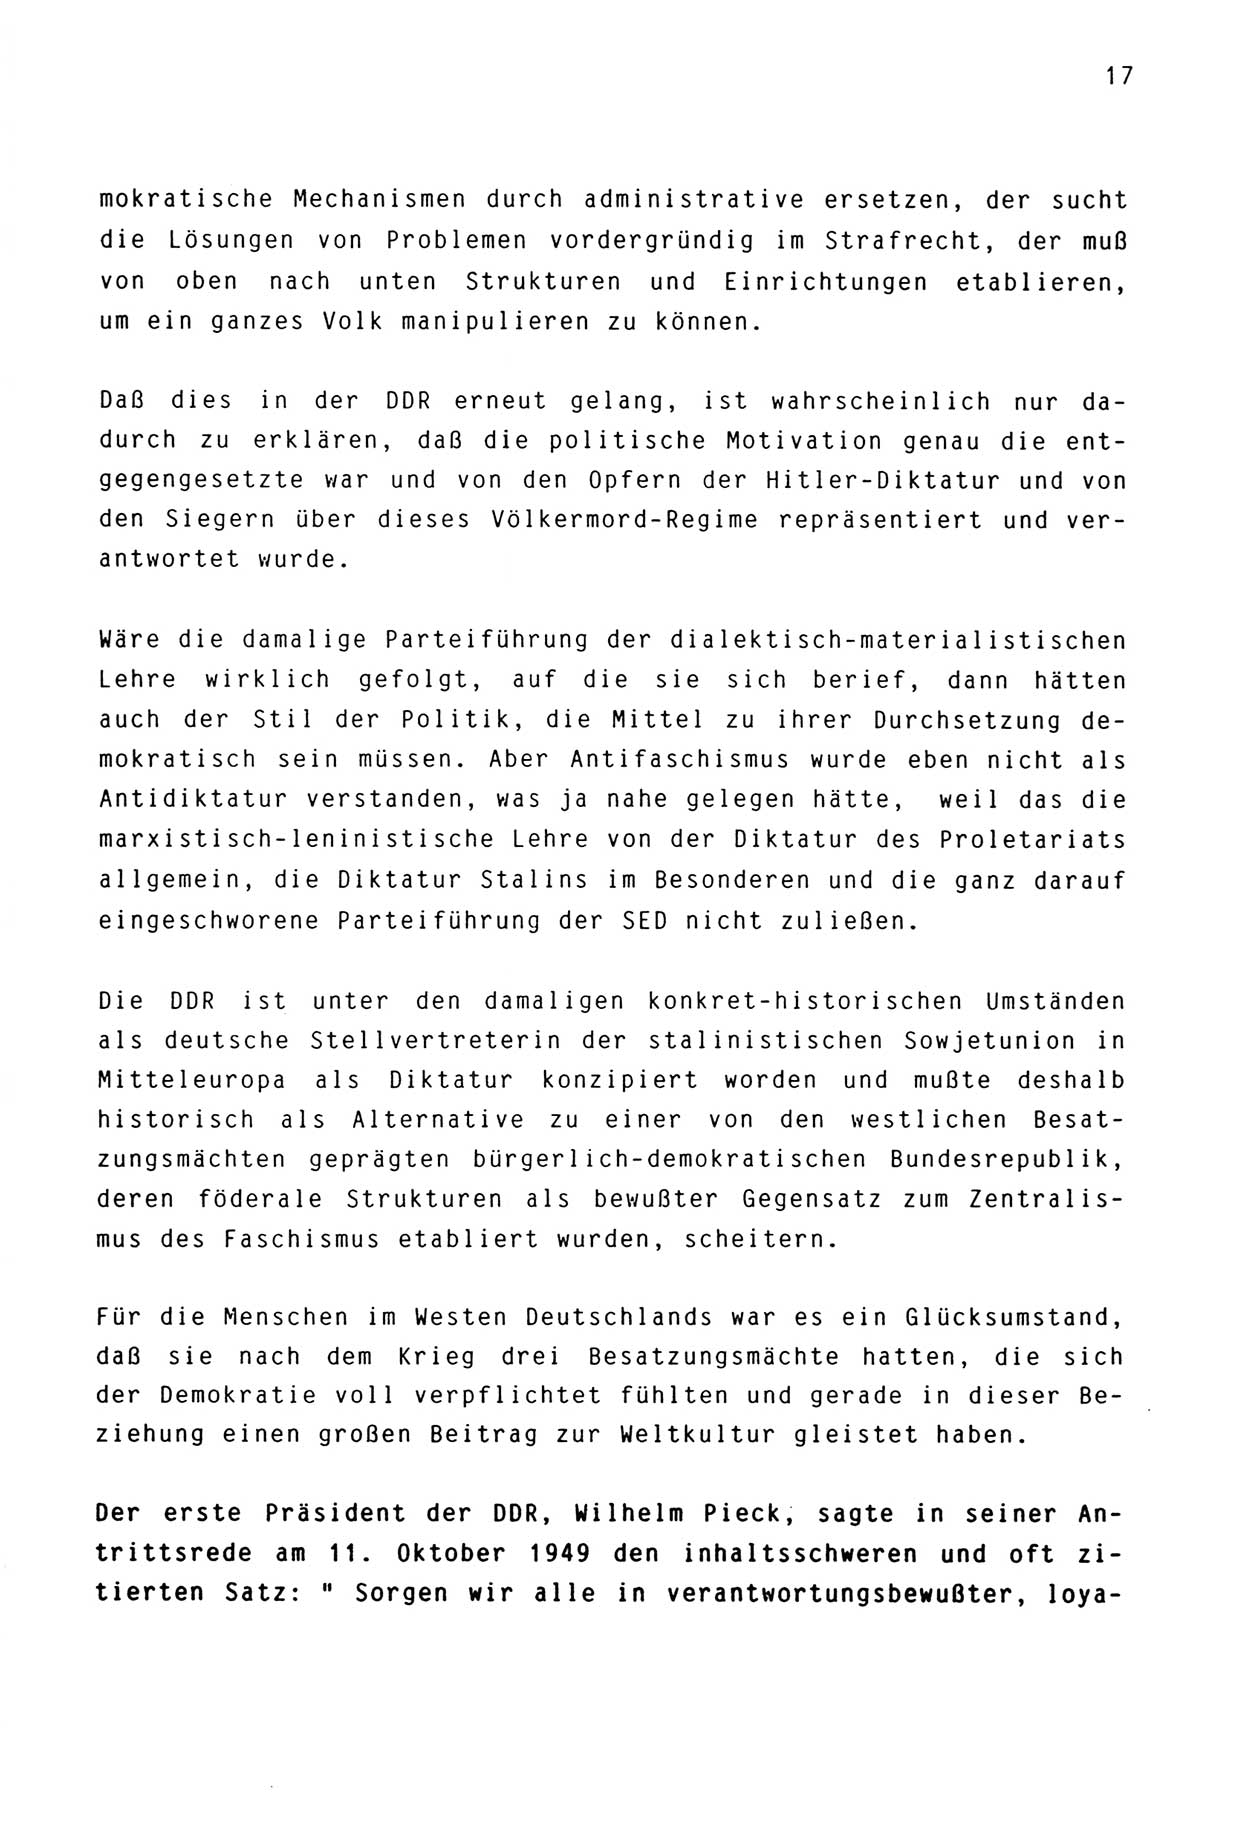 Zwie-Gespräch, Beiträge zur Aufarbeitung der Stasi-Vergangenheit [Deutsche Demokratische Republik (DDR)], Ausgabe Nr. 3, Berlin 1991, Seite 17 (Zwie-Gespr. Ausg. 3 1991, S. 17)